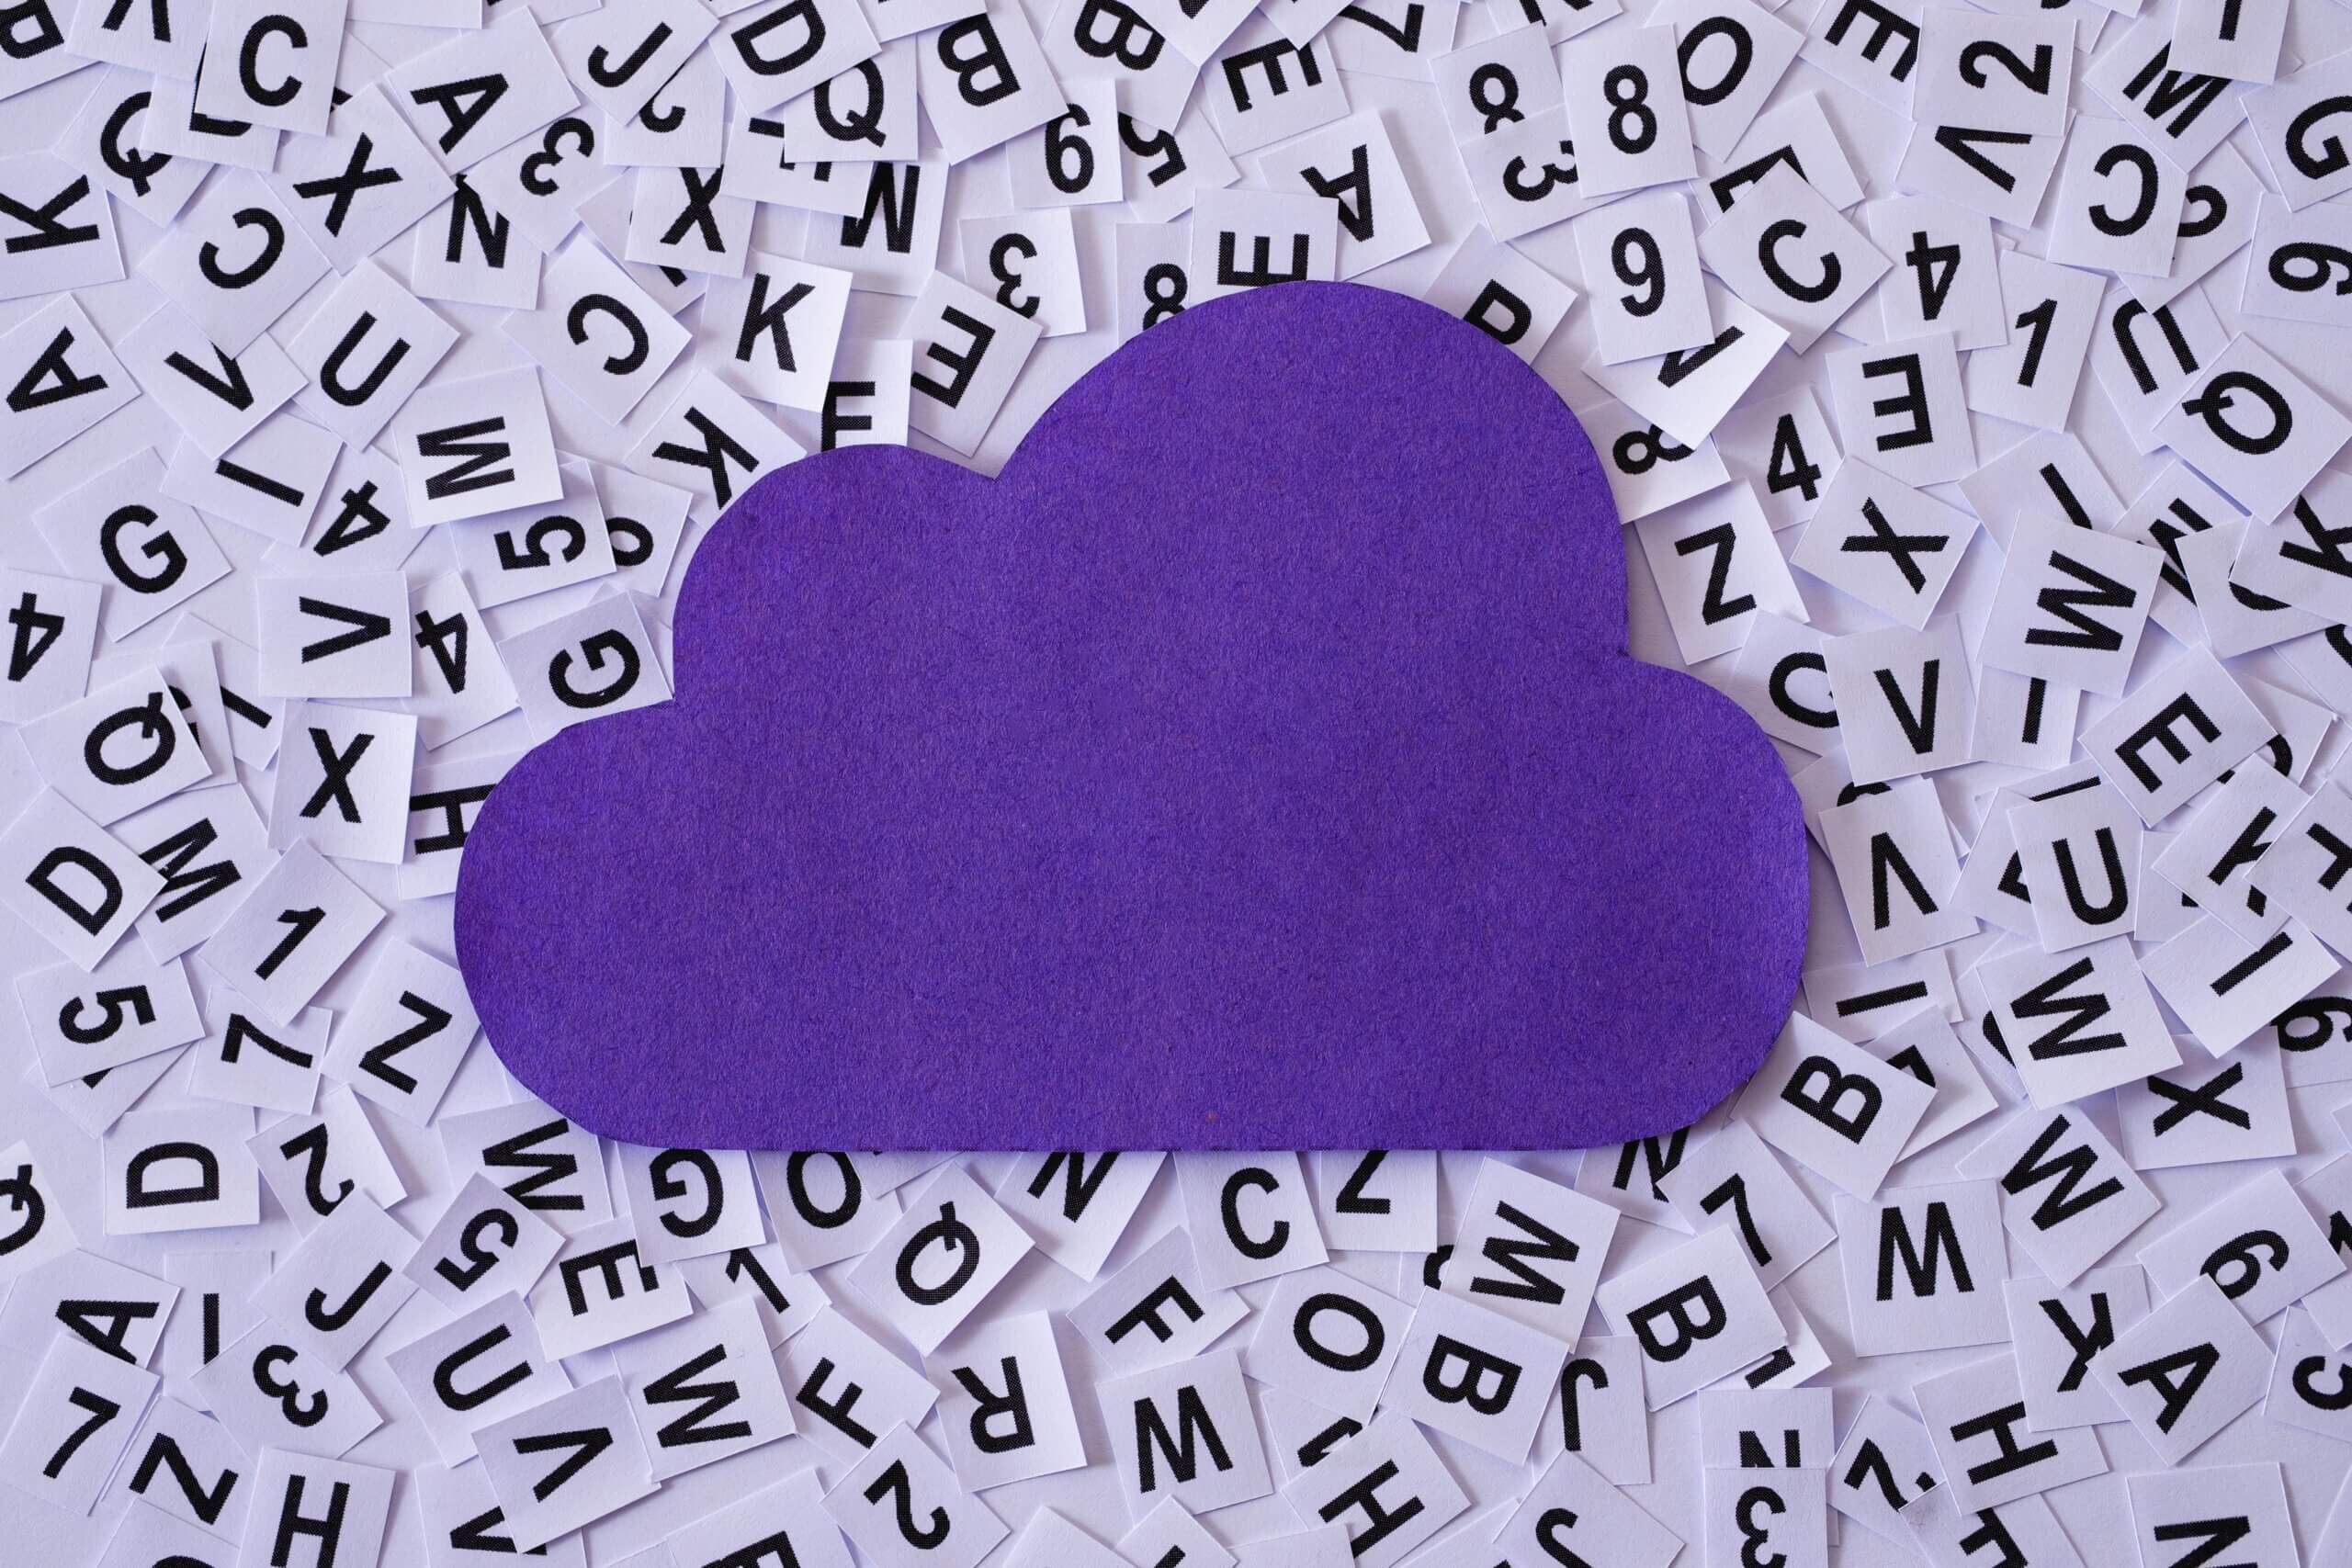 A imagem representa o conteúdo sobre carreira em computação em nuvem, onde encontramos uma nuvem apoiada em diversos quadrados, com letras do alfabeto.